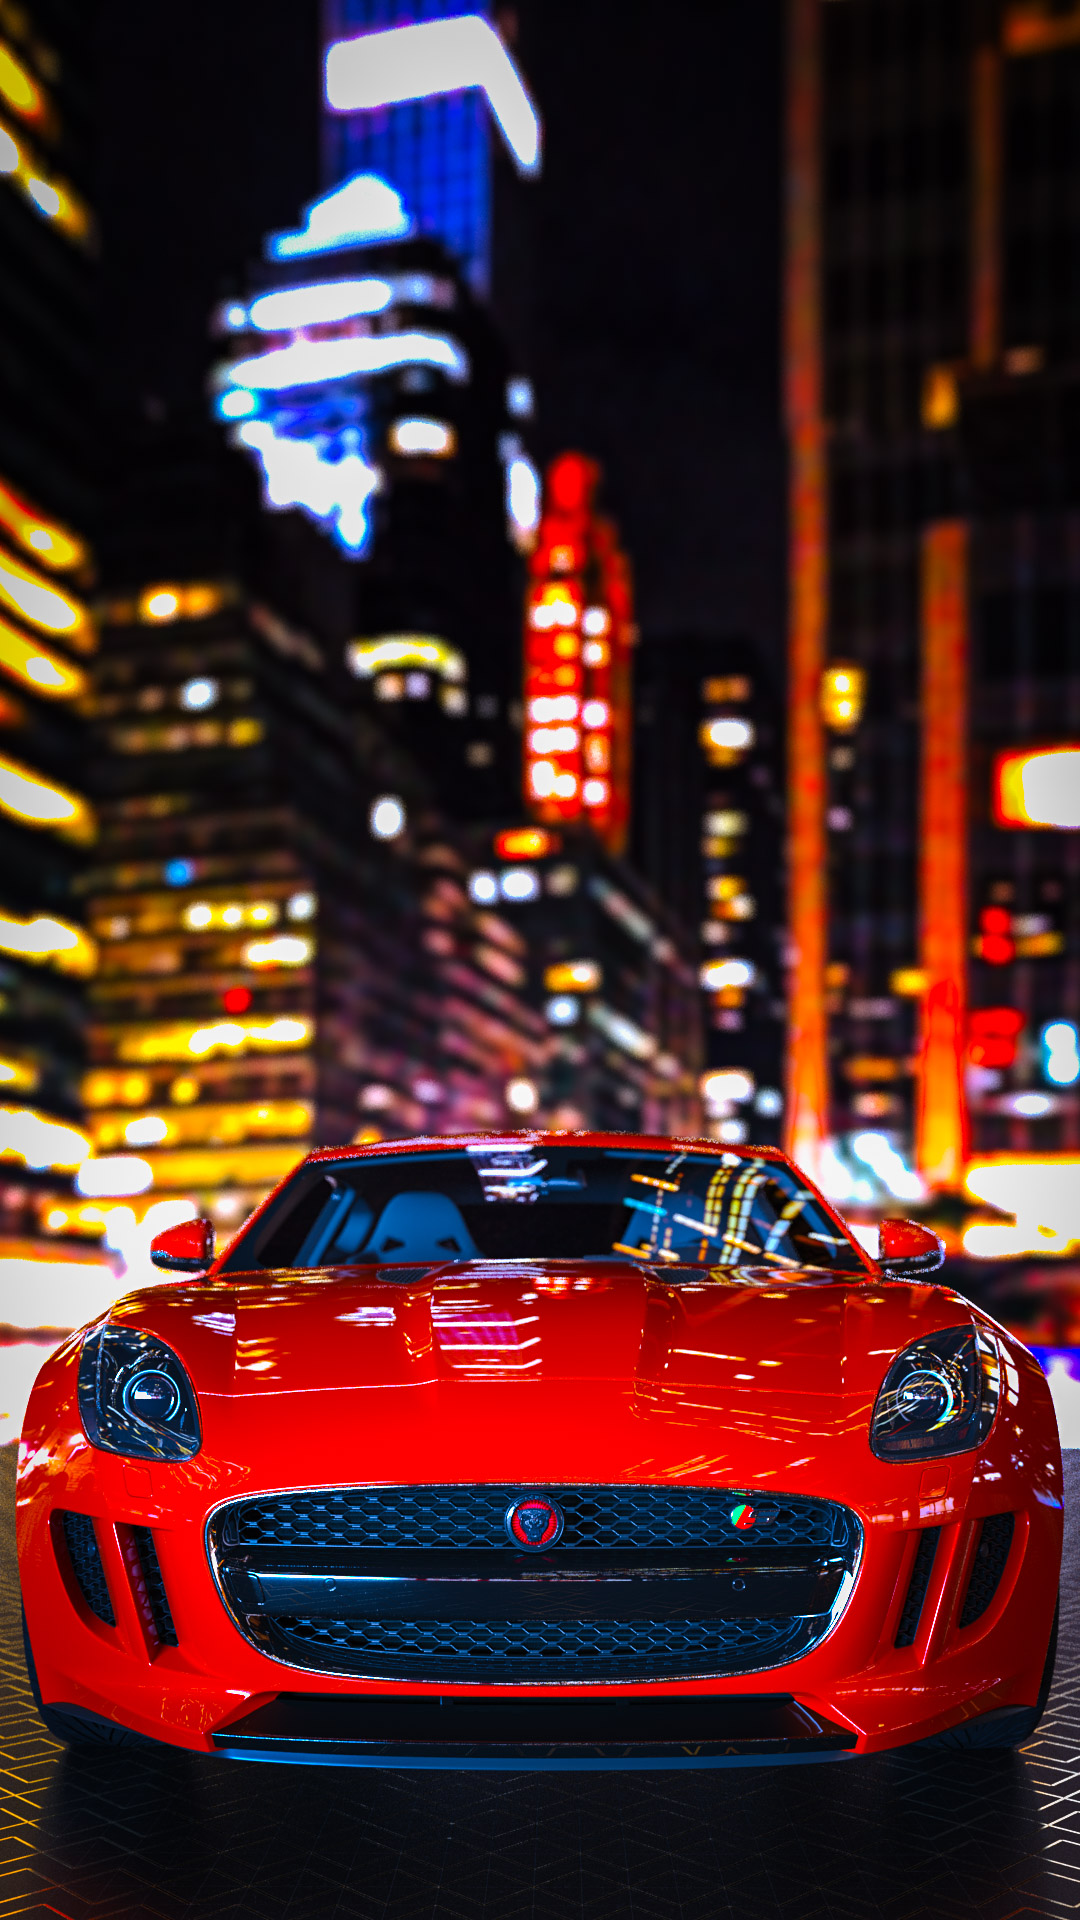 car wallpaper for mobile phone of Jaguar F-TYPE in Full HD resolution